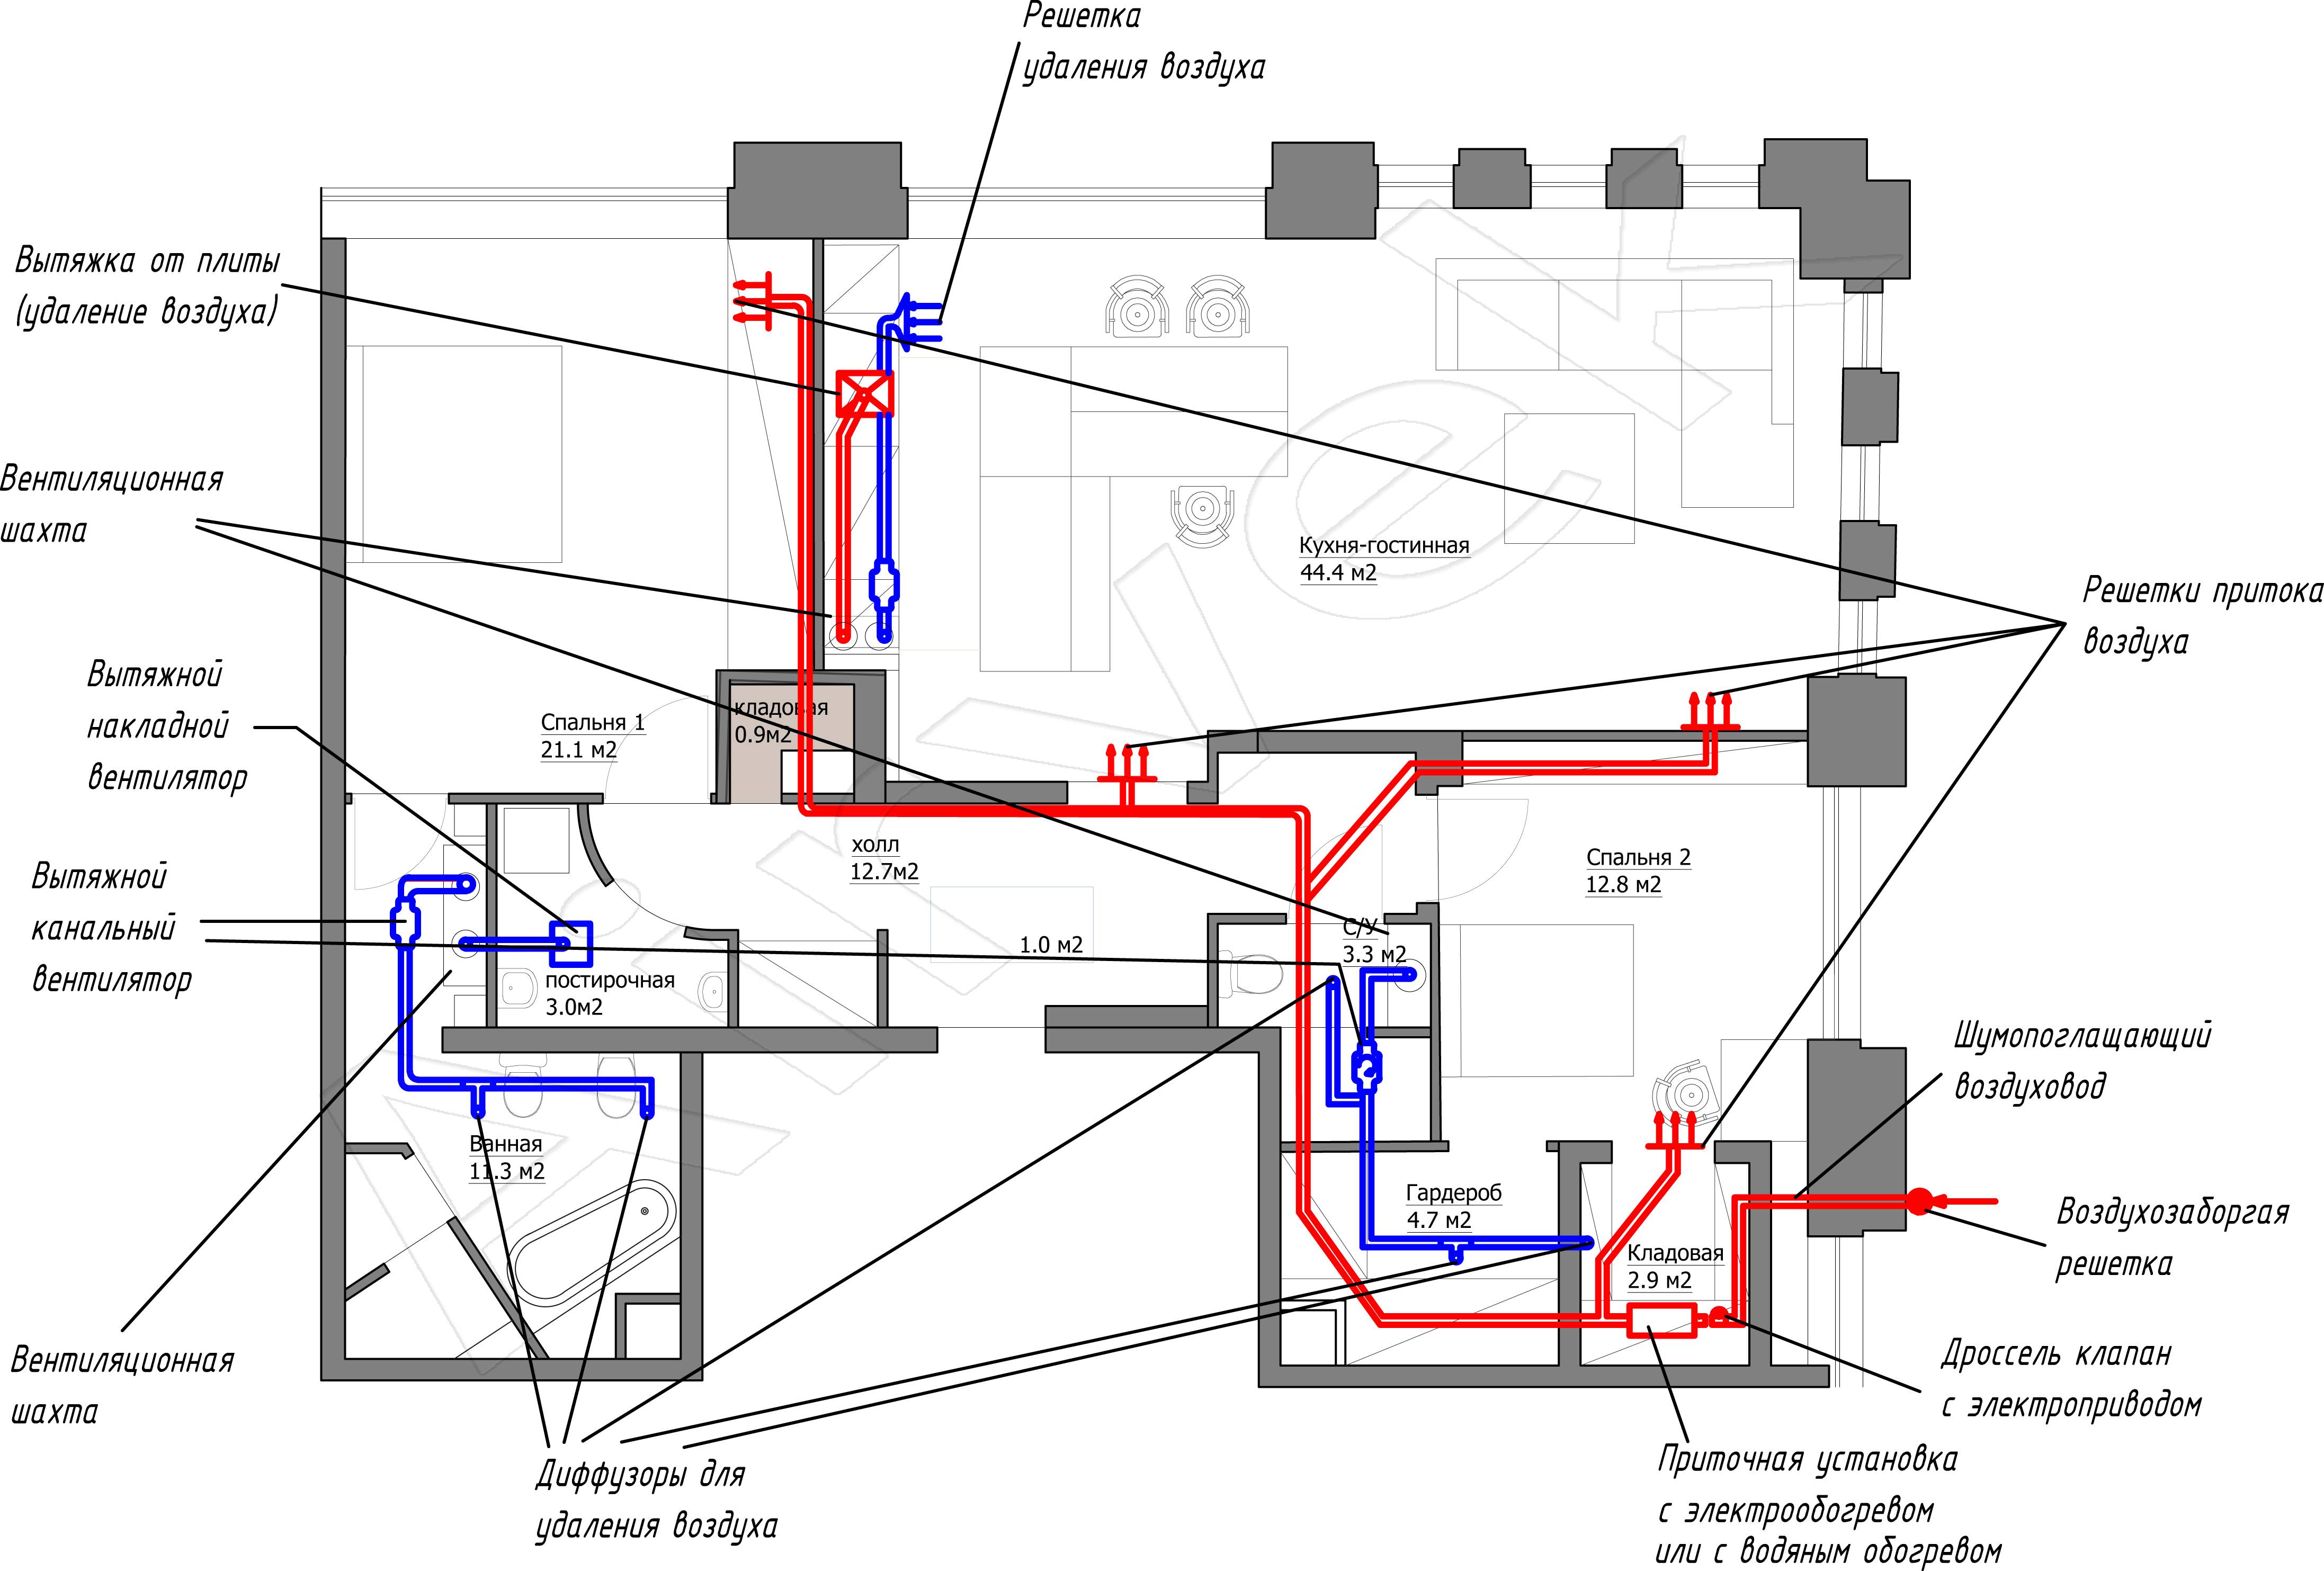 Принудительная вентиляция в квартире: виды и особенности, инструкция по монтажу, установки